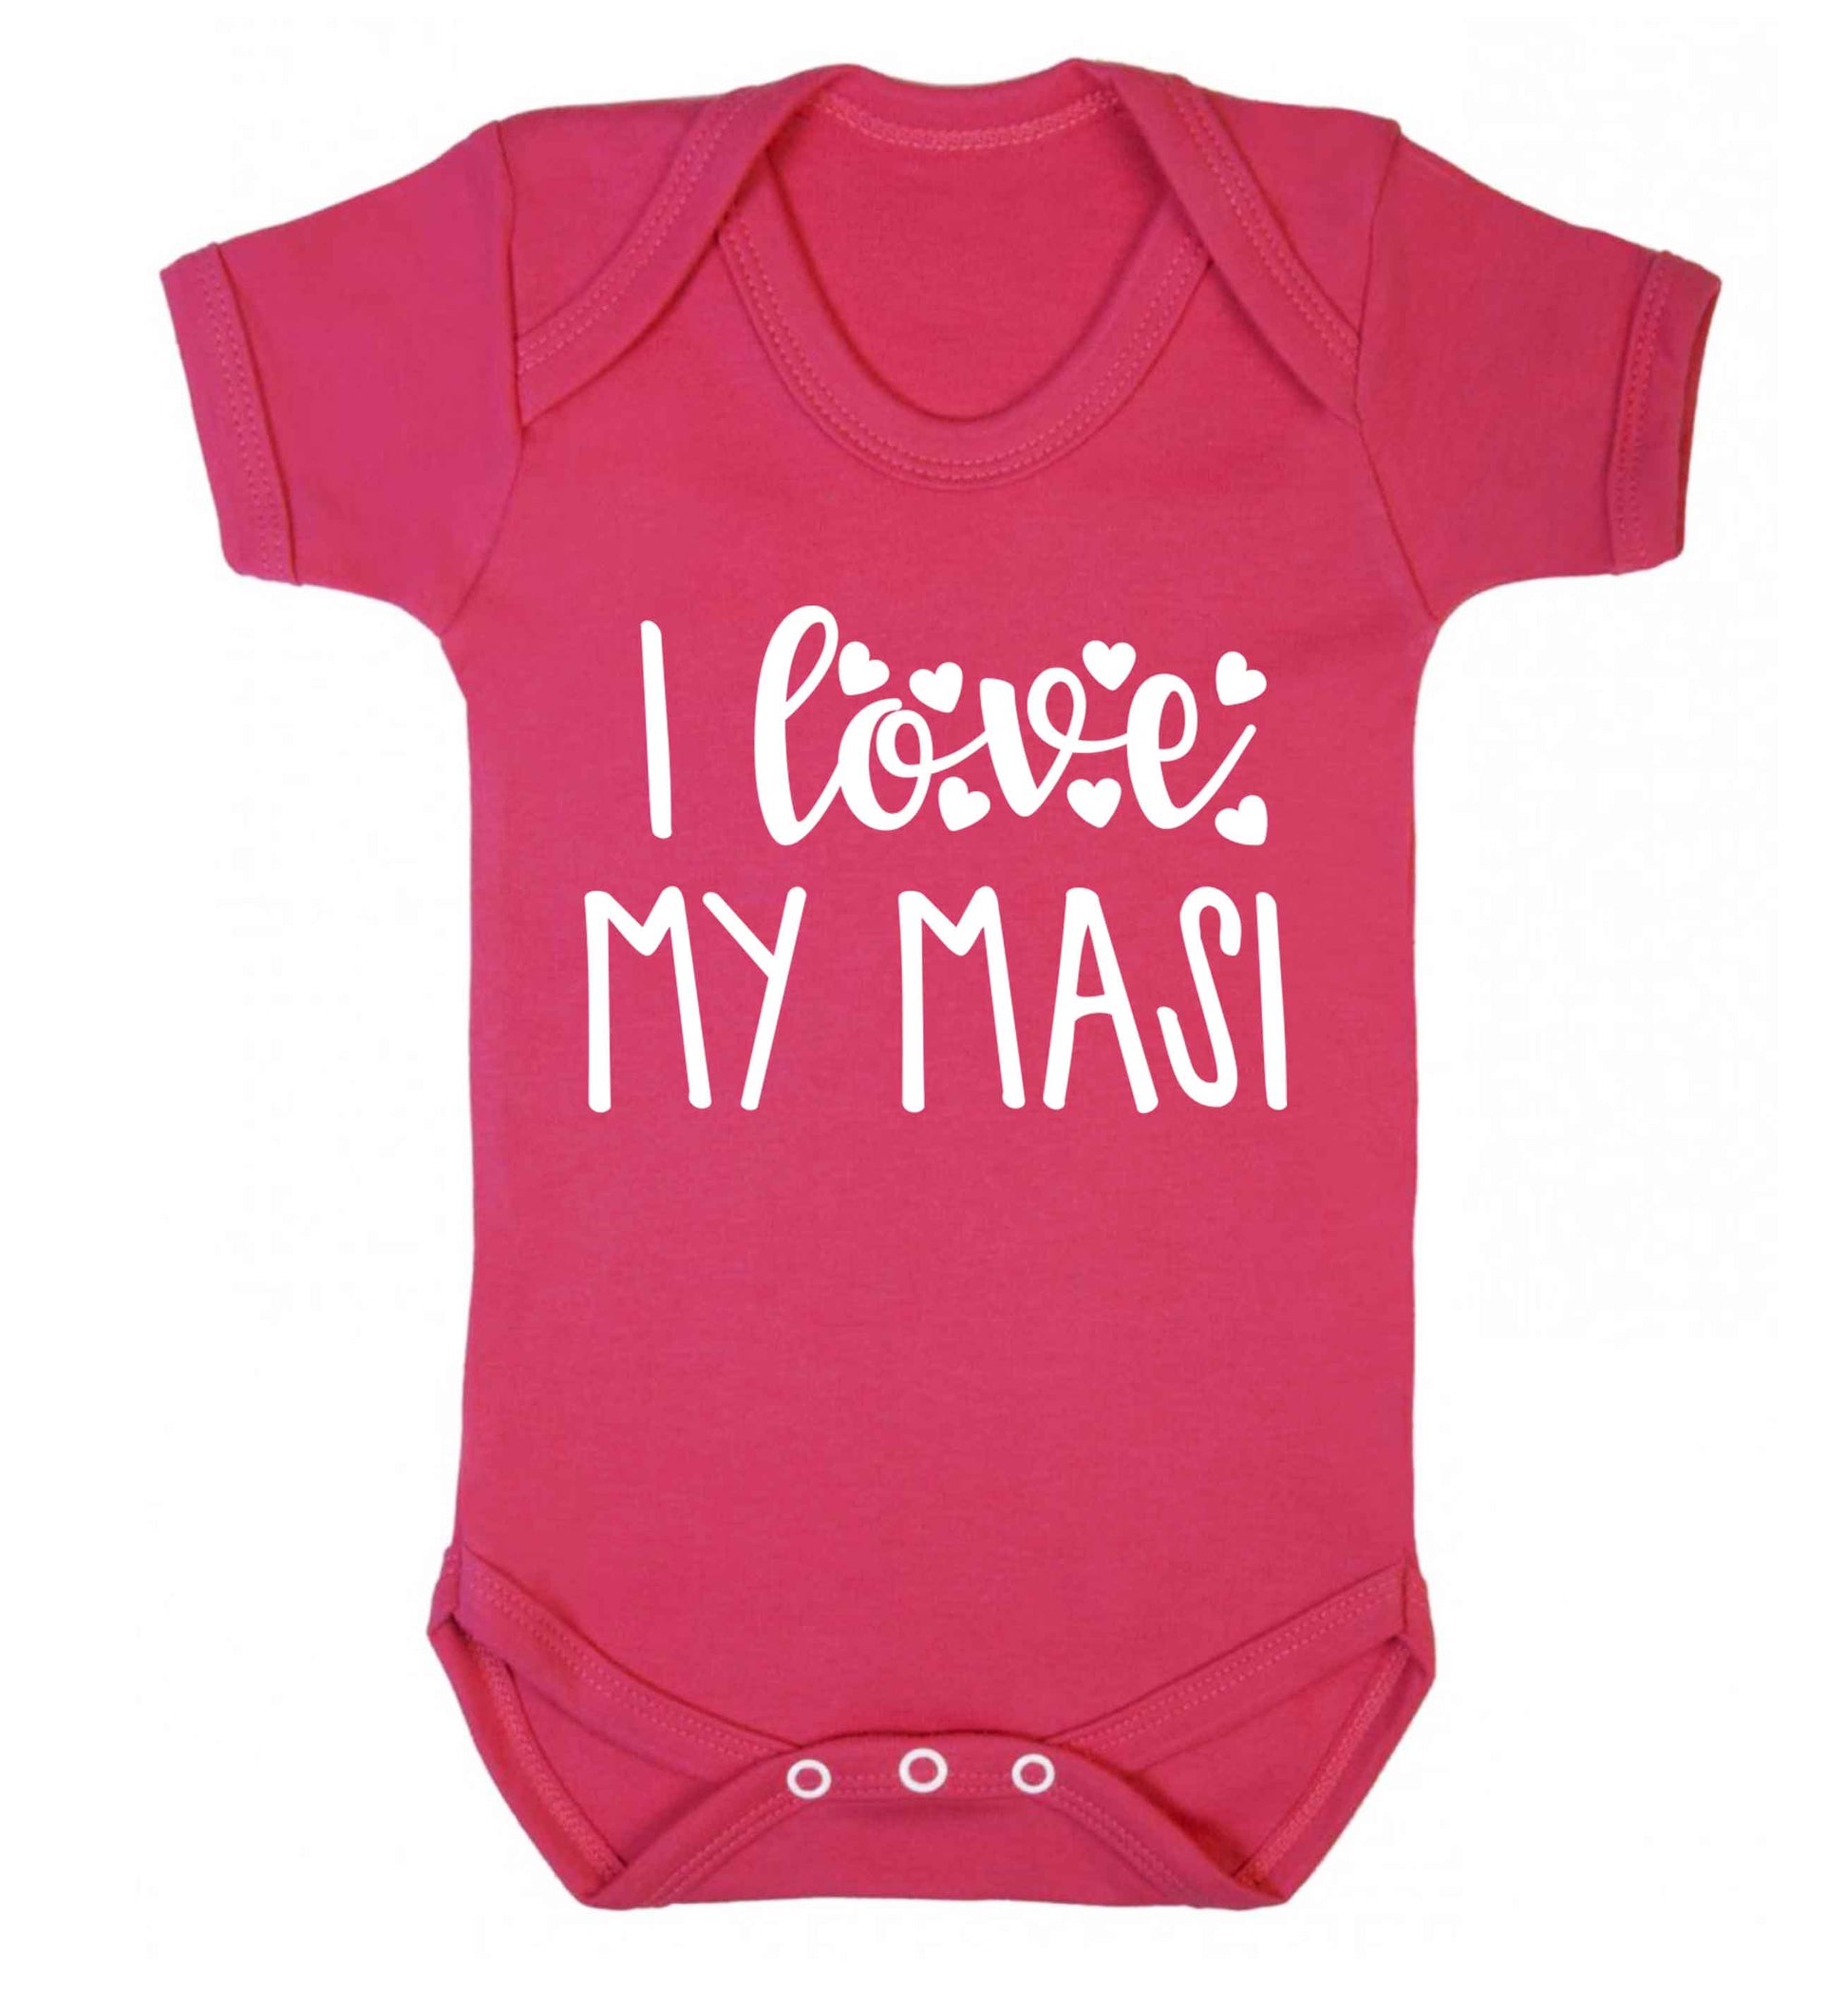 I love my masi Baby Vest dark pink 18-24 months